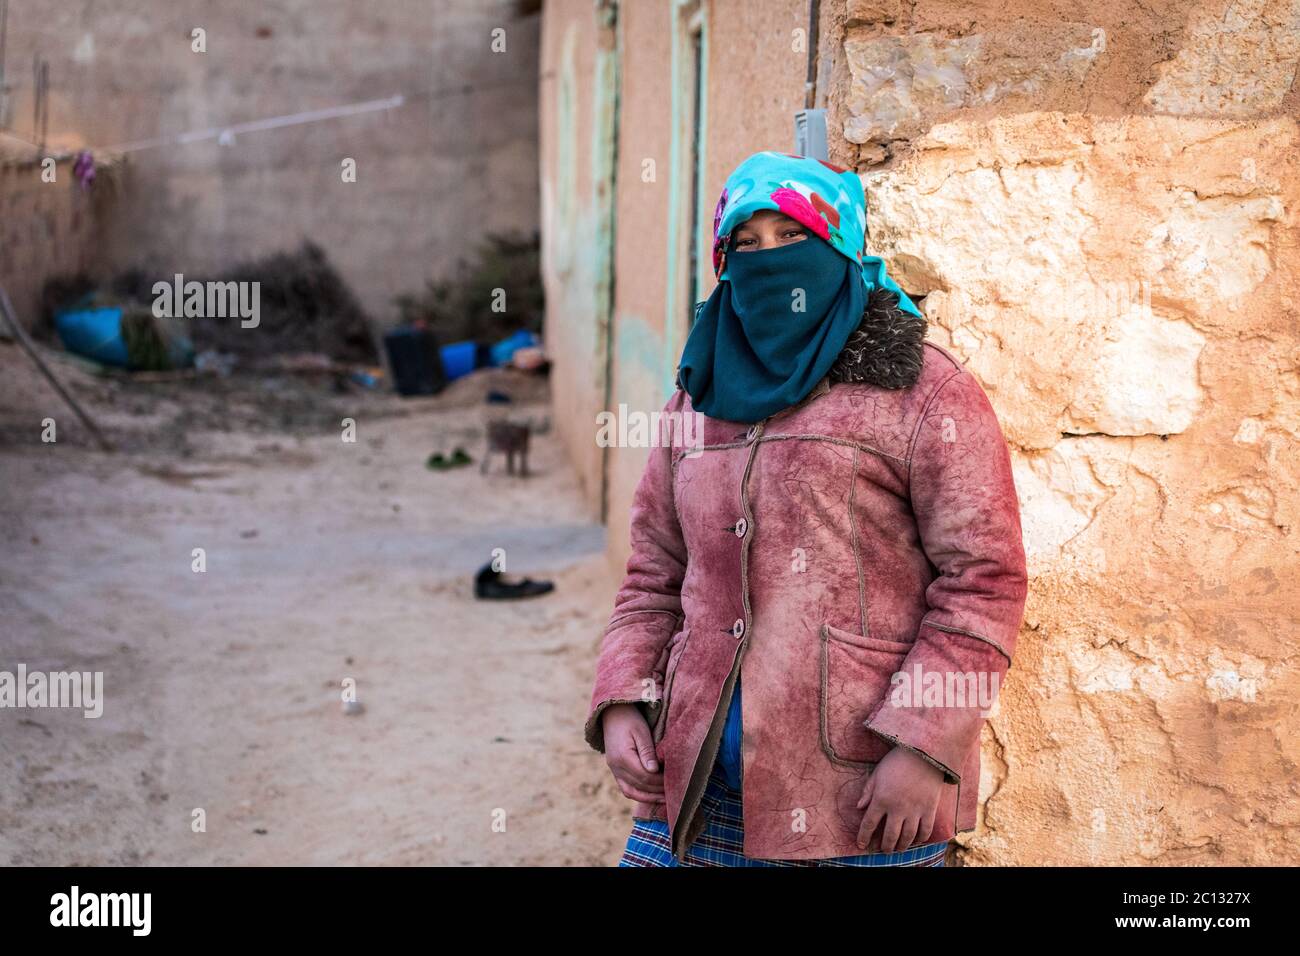 Portrait d'une femme berbère nomade avec son visage couvert, penchée sur un mur de briques de boue dans un simple village berbère dans la province de midelt, au maroc Banque D'Images